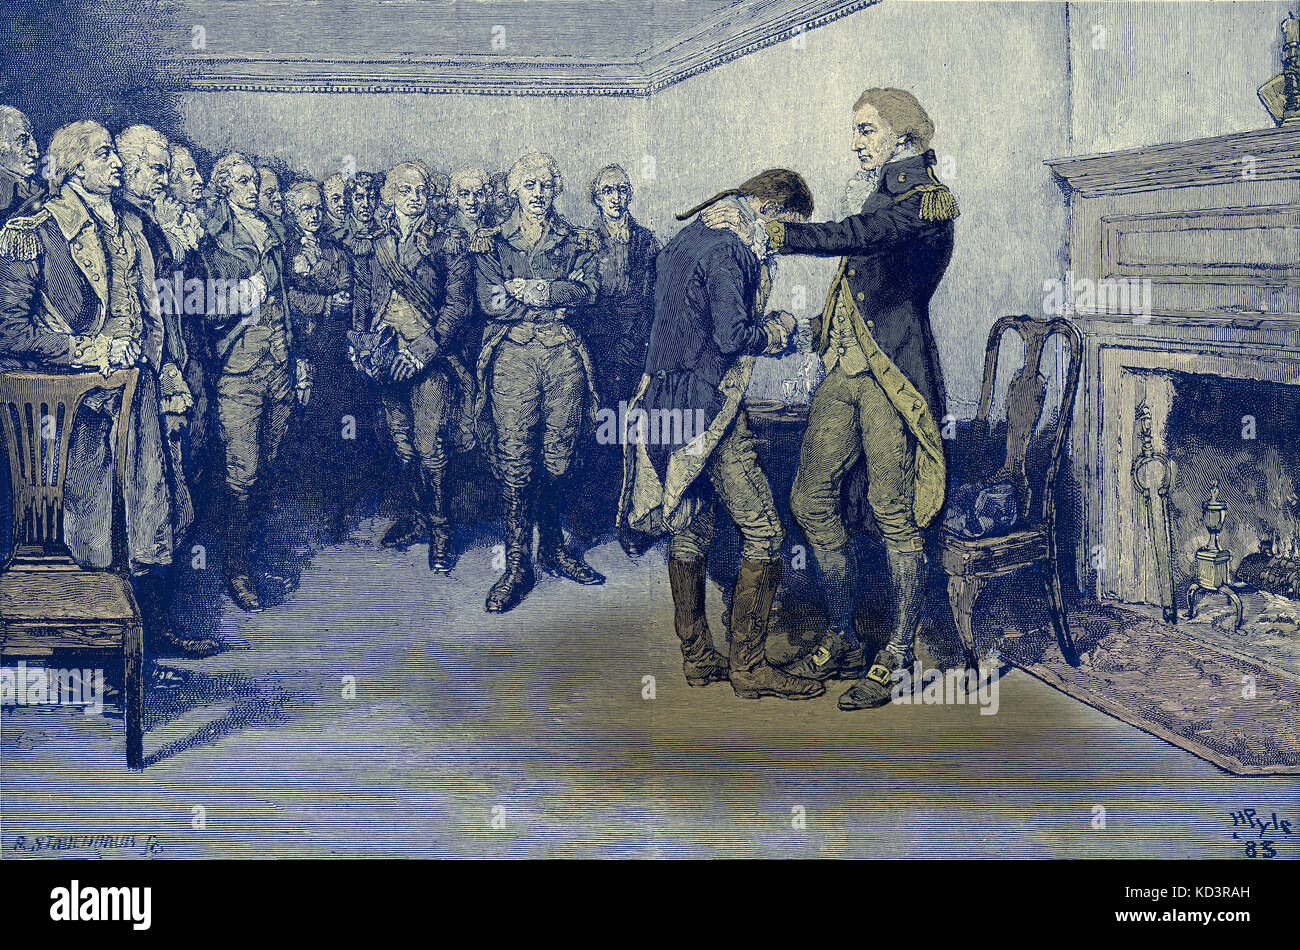 Washington toma salir de sus oficiales, el 4 de diciembre de 1783, tras el final de la Revolución Americana. Ilustración de Howard Pyle, 1896 Foto de stock